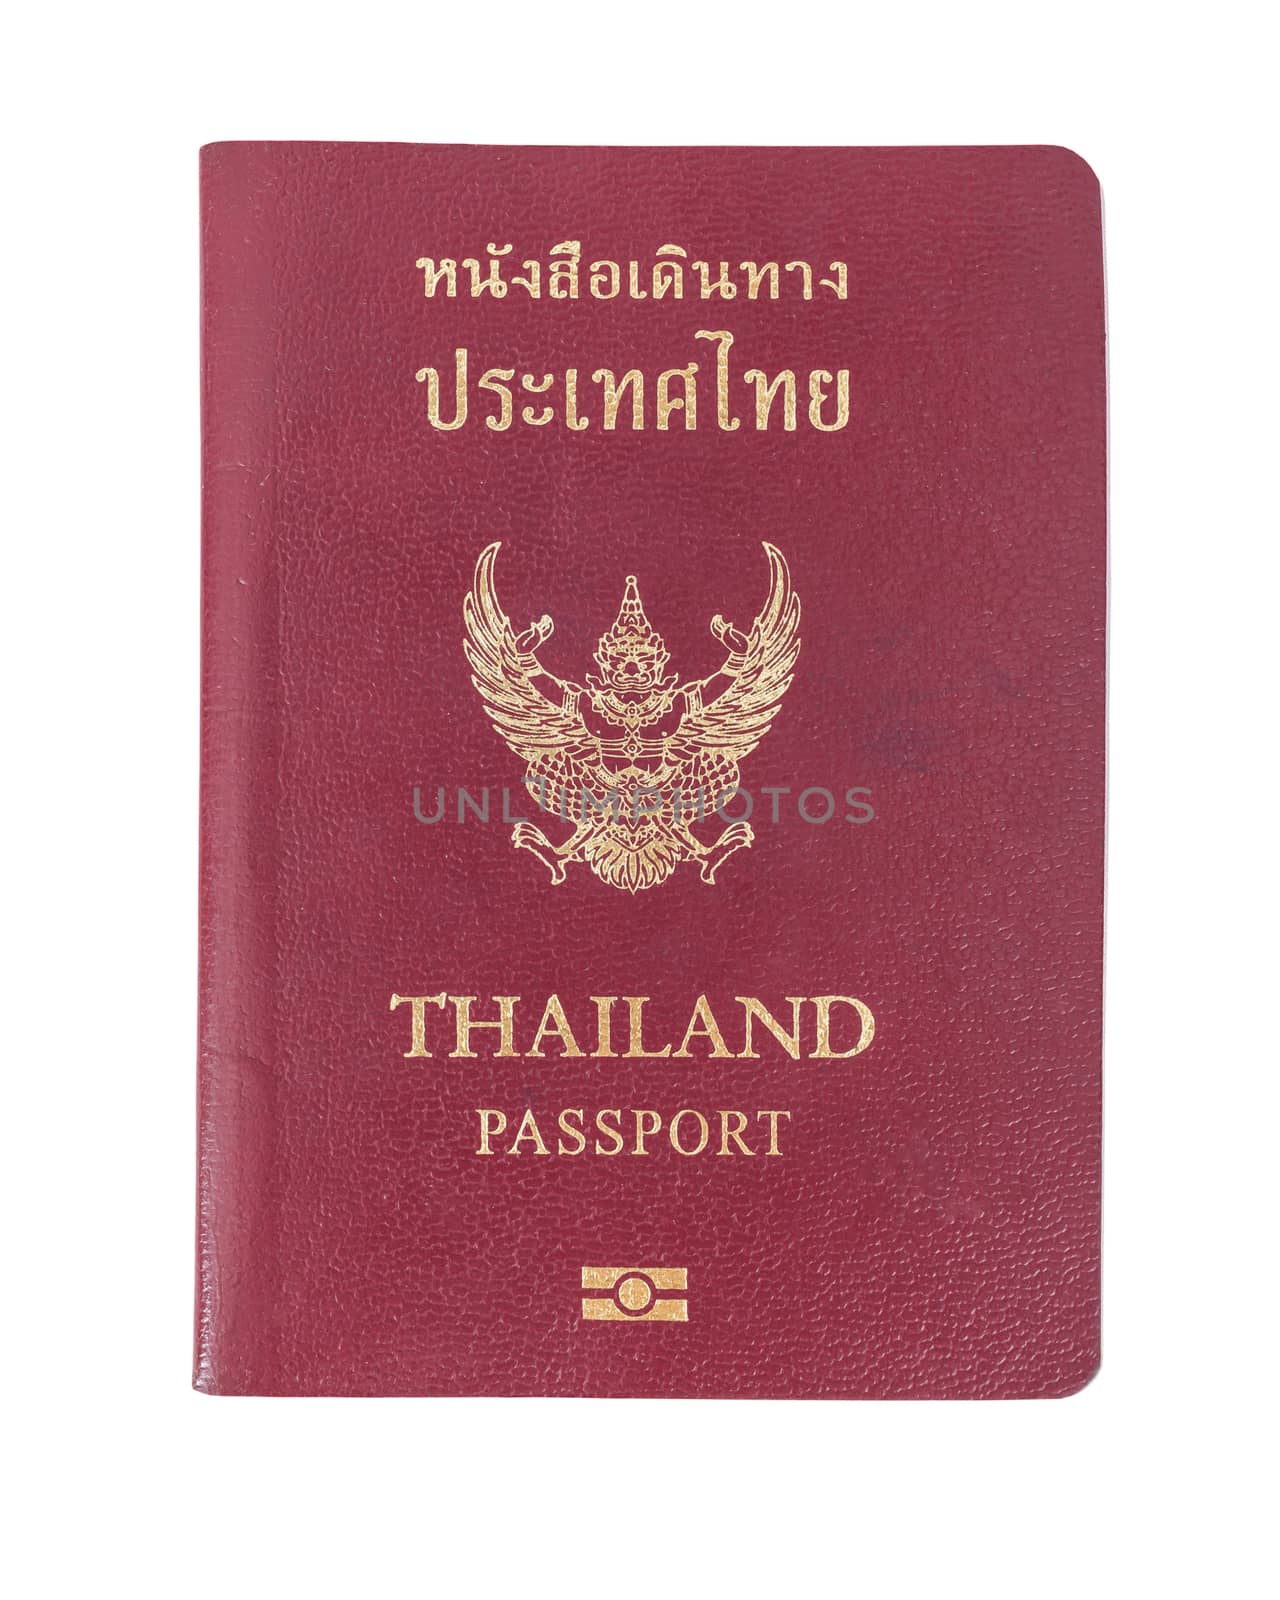 Thailand Passport on white background